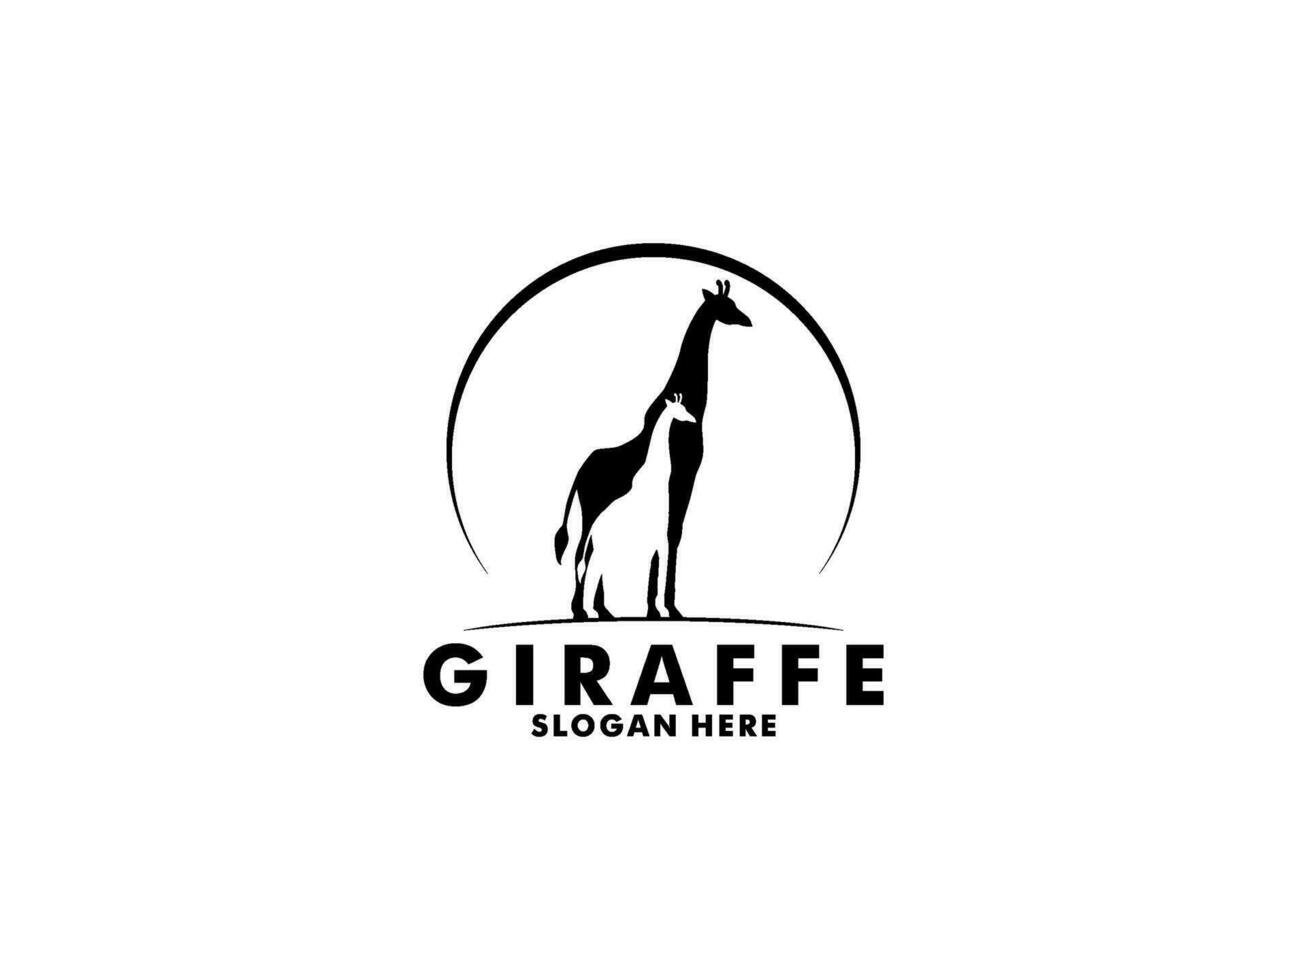 Giraffe logo vector, Giraffe silhouette logo design template vector